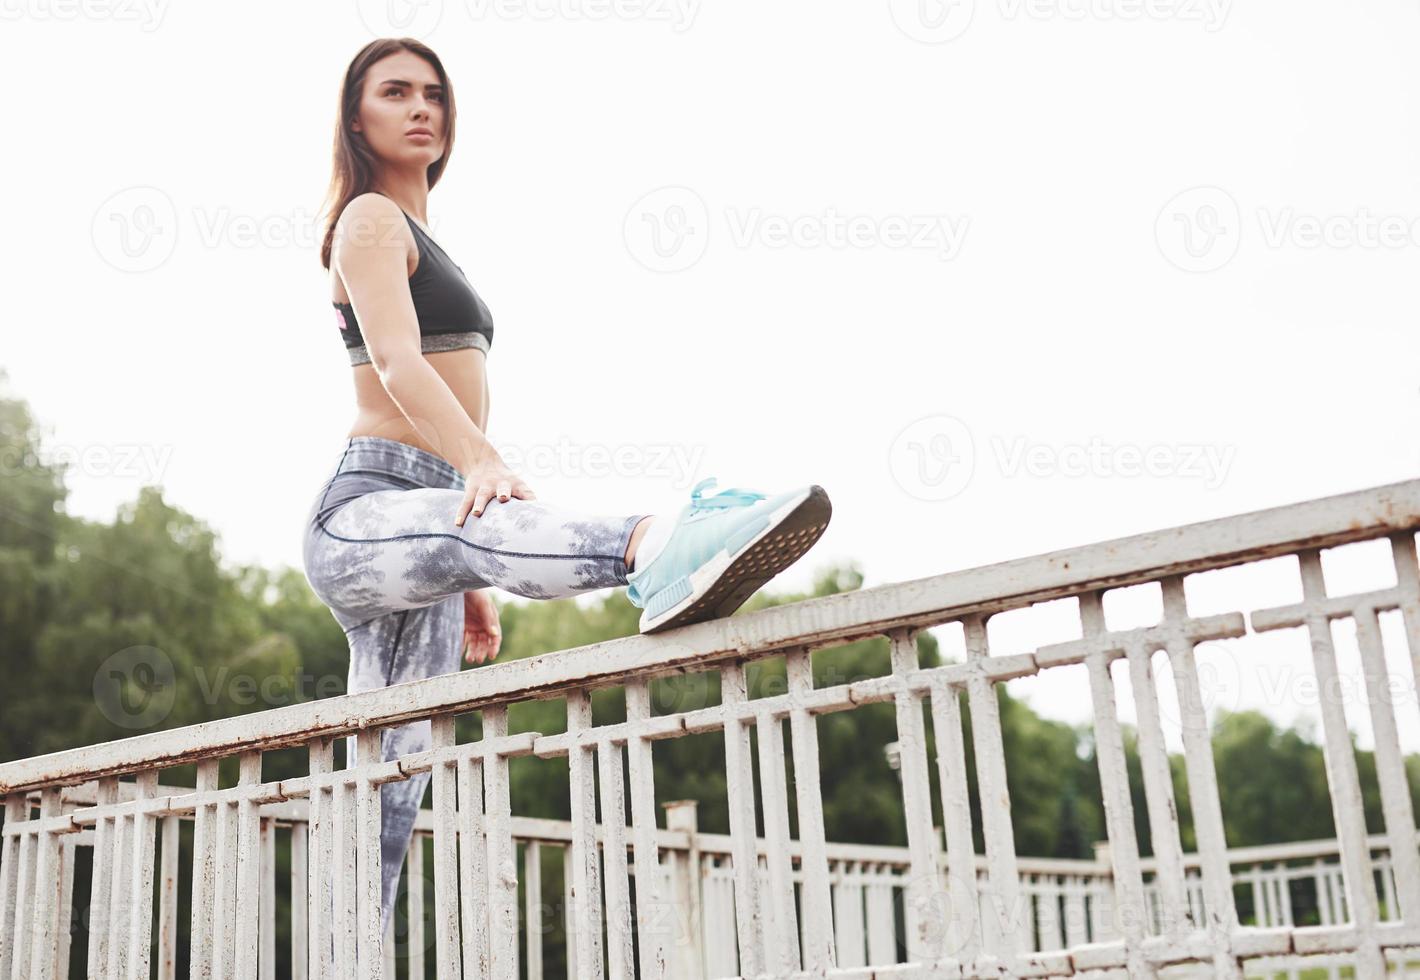 une belle brune athlète effectue des exercices en plein air photo